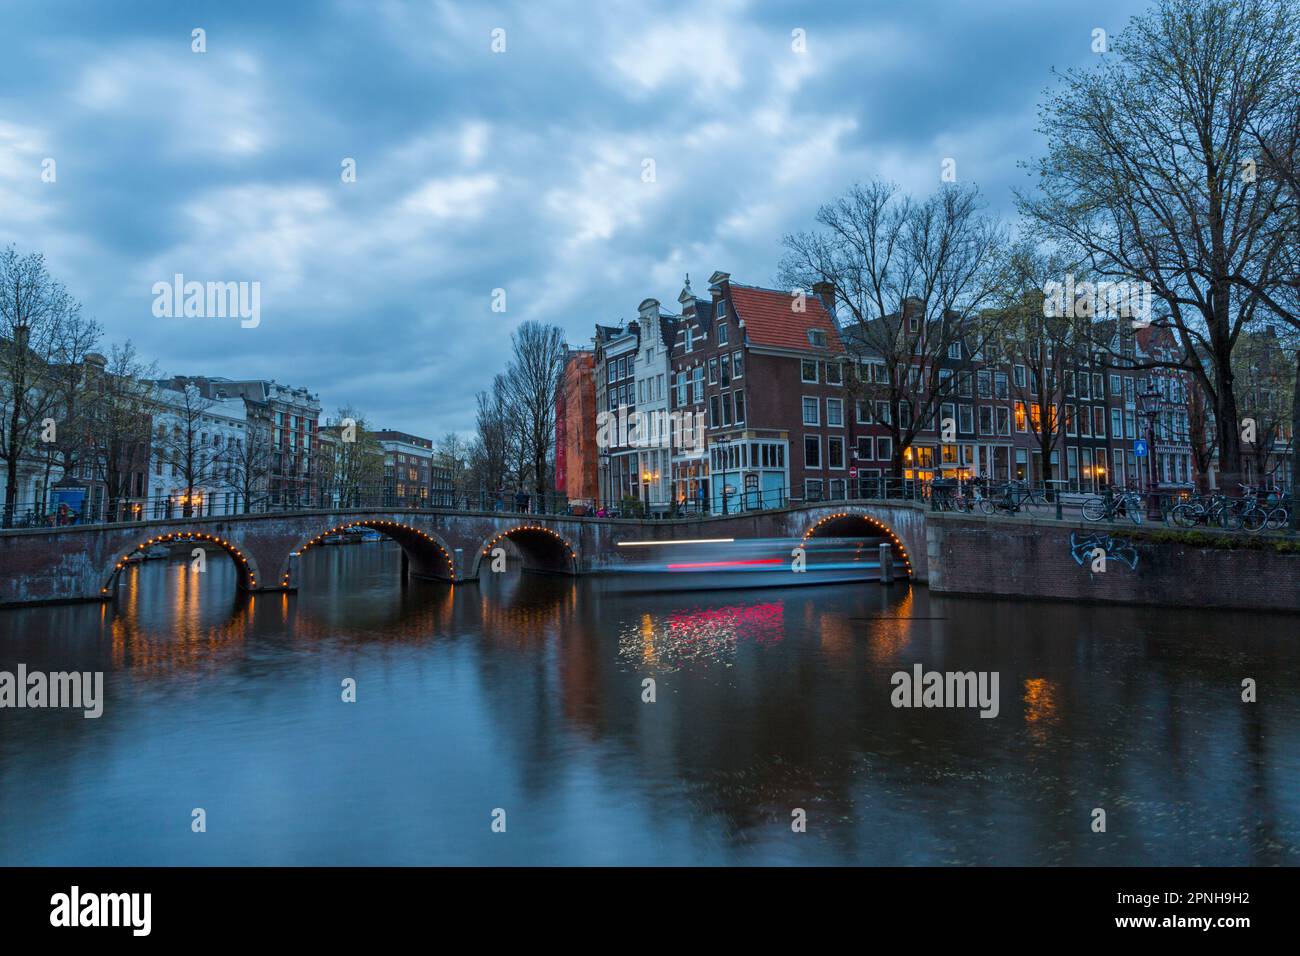 Ponti illuminati al crepuscolo ora blu ad Amsterdam, Olanda, Paesi Bassi nel mese di aprile - lunga esposizione con luci di barca che passano sotto il ponte Foto Stock